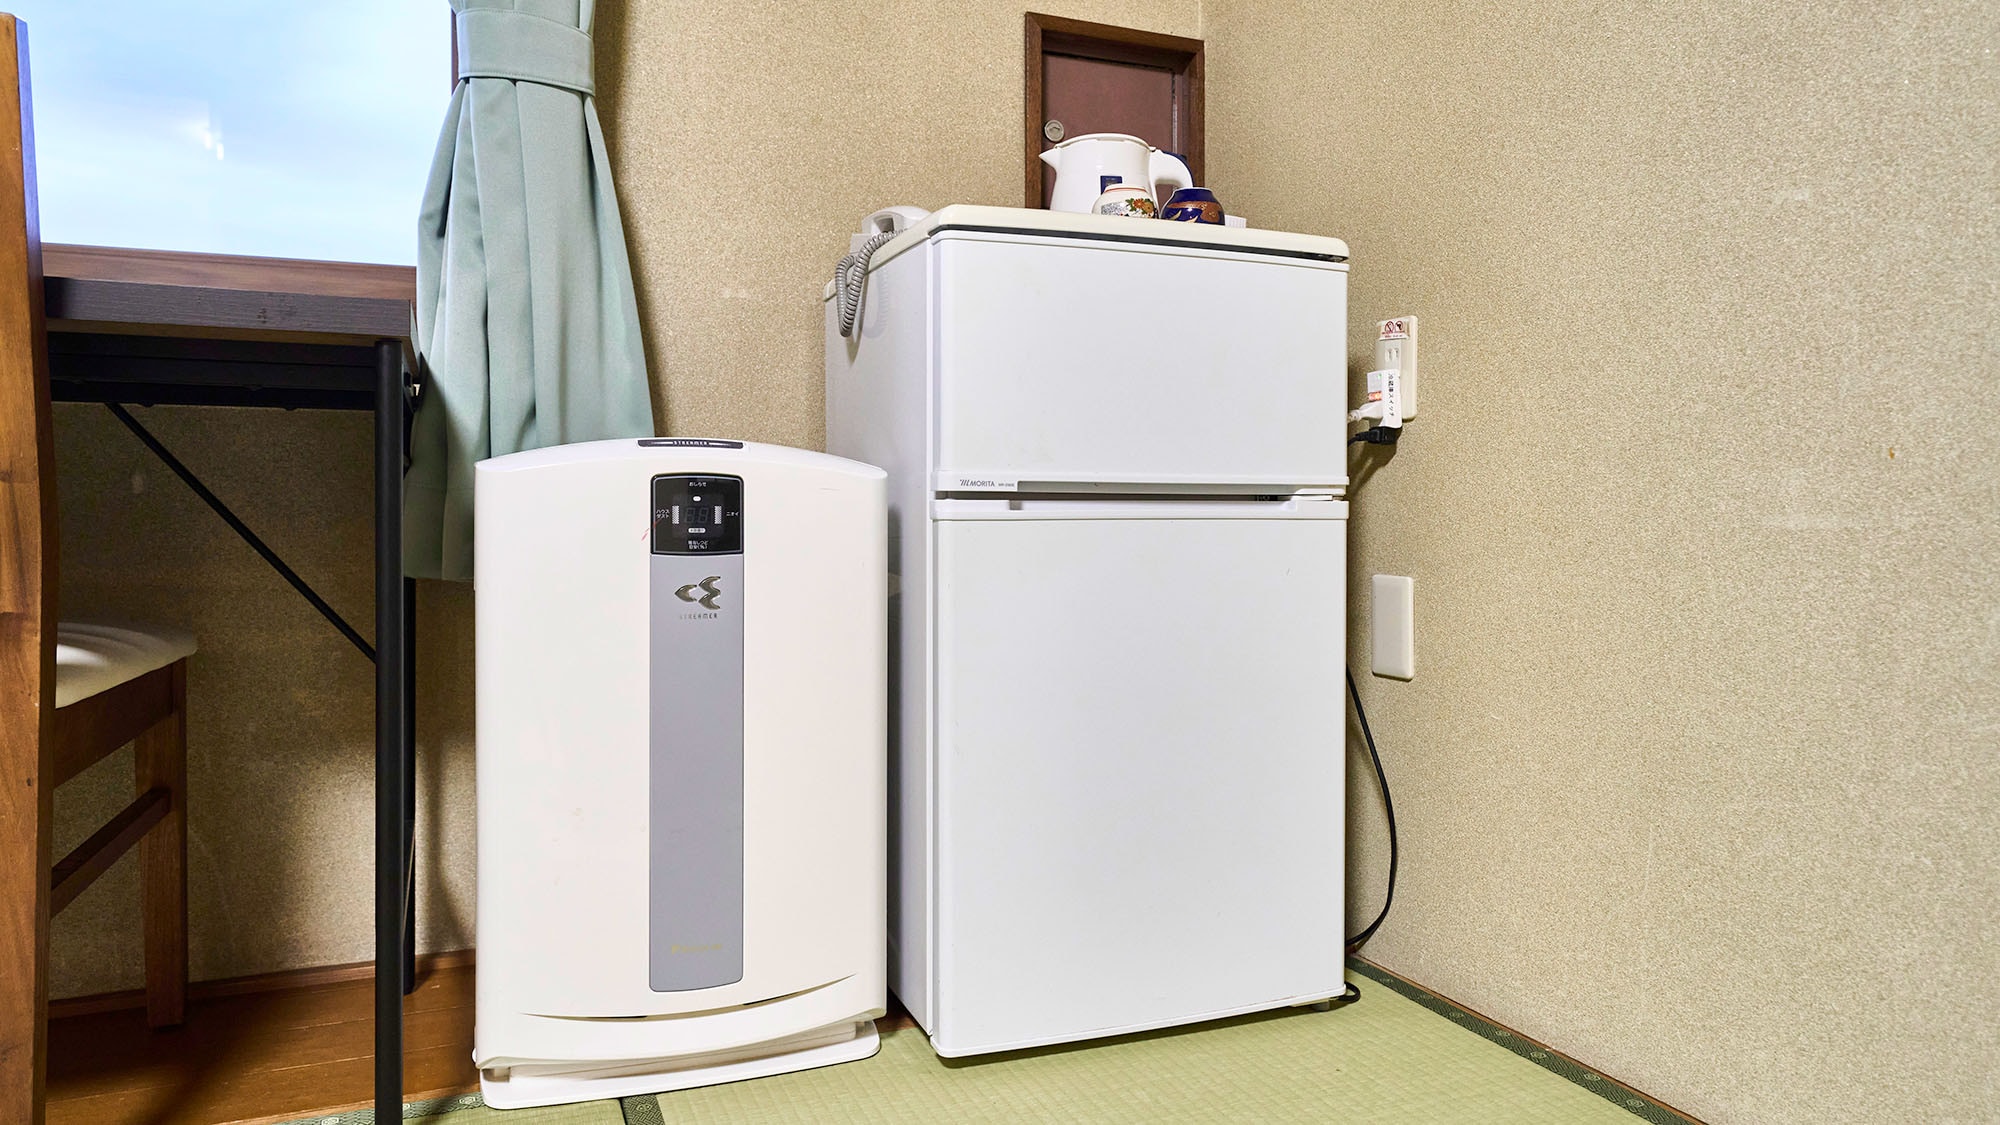 ・[日式房B] 备有冰箱、空气净化器等让您住宿舒适的设备。